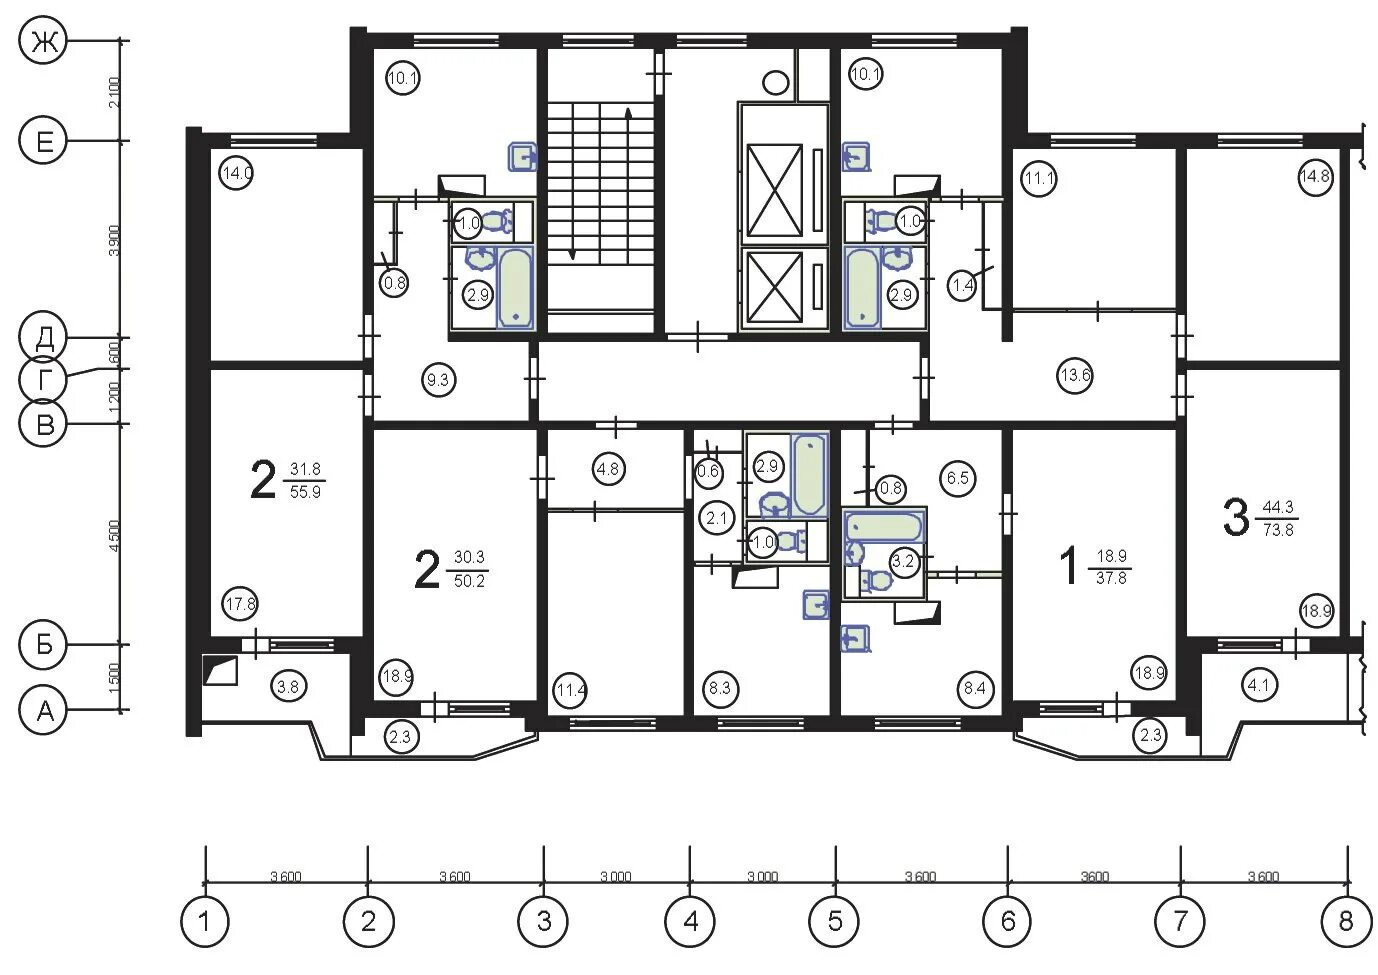 Размеры панельных квартир. Планировка квартир п-44. Планировка п-44 двухкомнатная. П-44 планировка с размерами 2-х комнатная квартира.